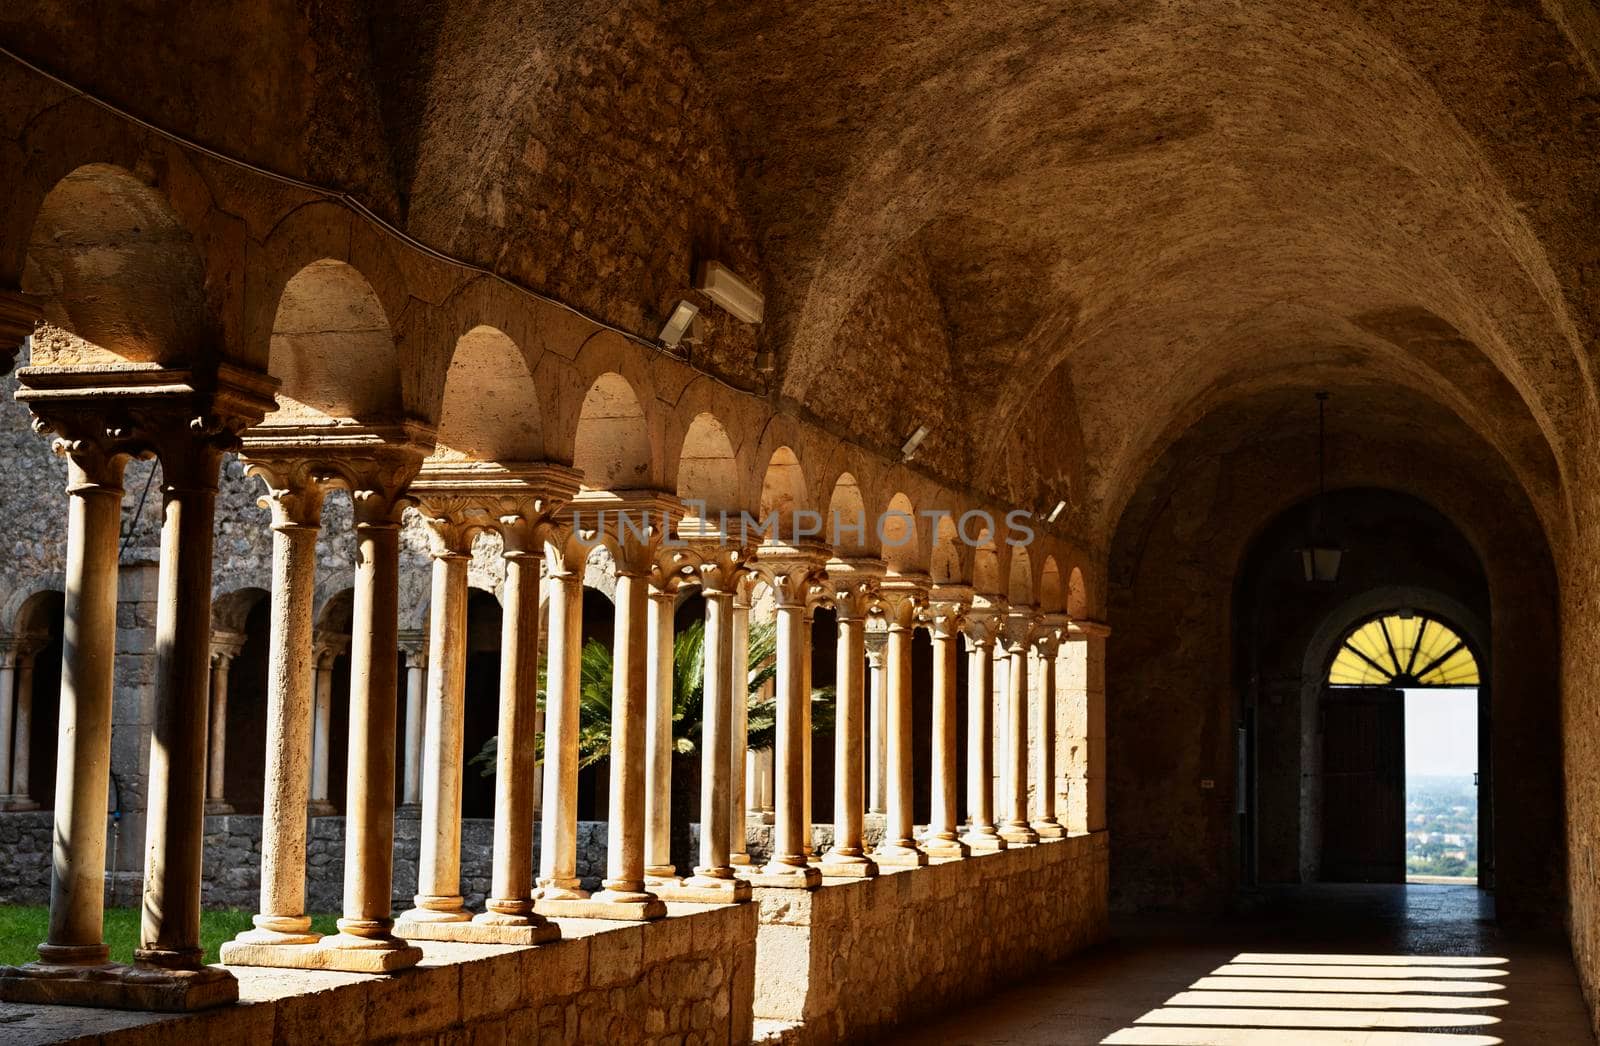 Sermoneta , Italy , Valvisciolo Abbey cloister by victimewalker